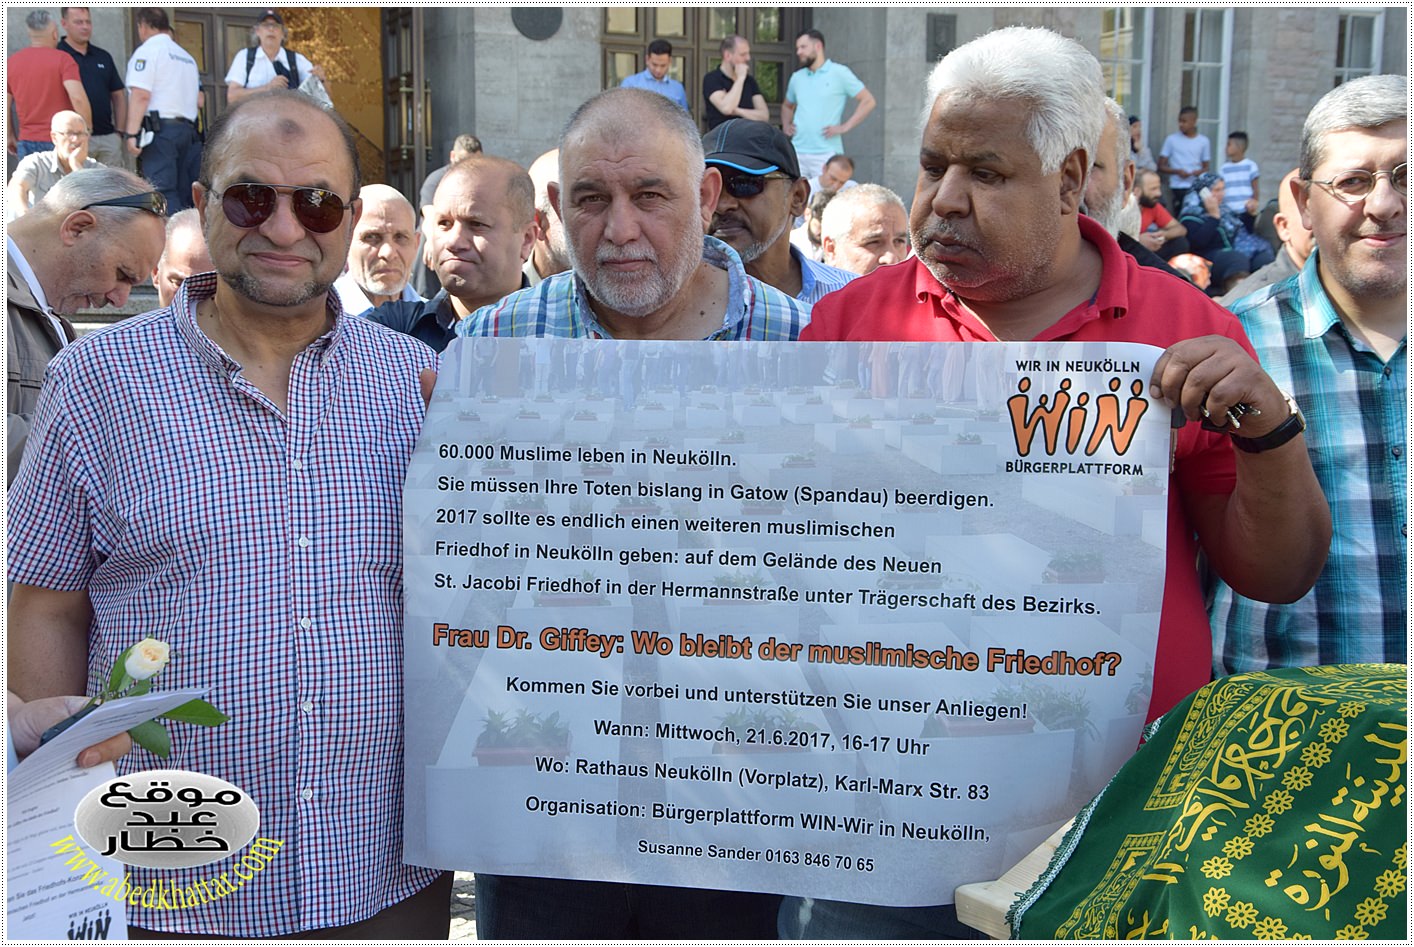 وقفة احتجاجية أمام ساحة بلدية النويكلن للمطالبة بتجهيز مقبرة إسلامية